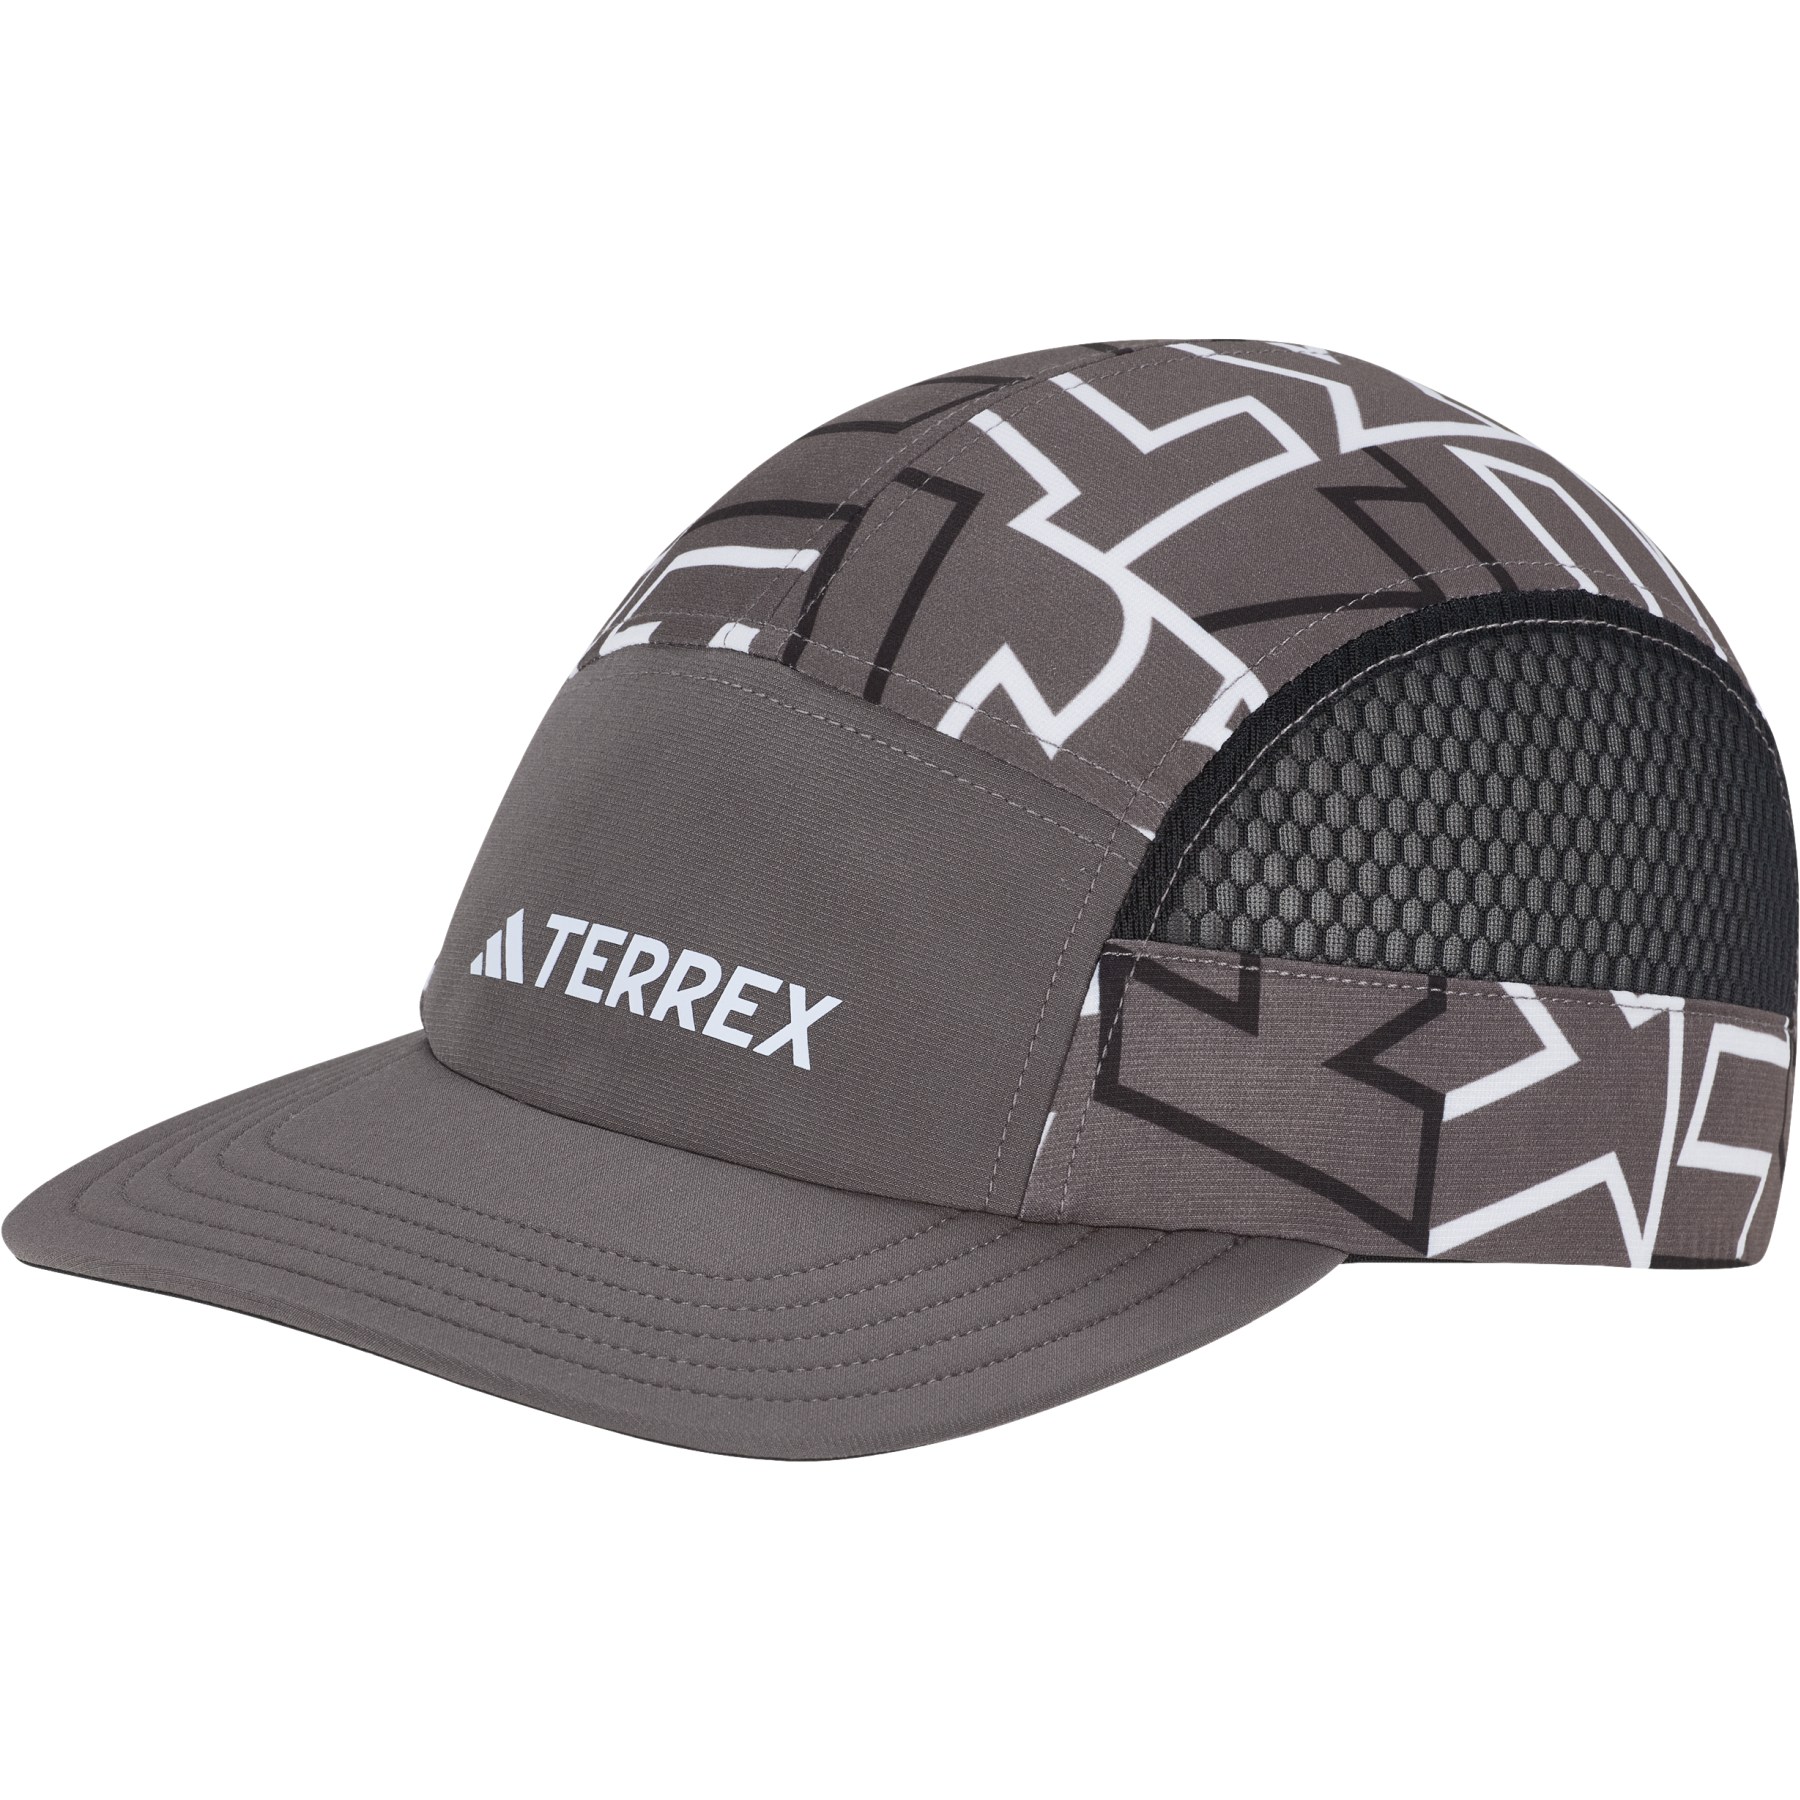 Produktbild von adidas TERREX HEAT.RDY 5-Panel Graphic Kappe - charcoal/white/black IN8287